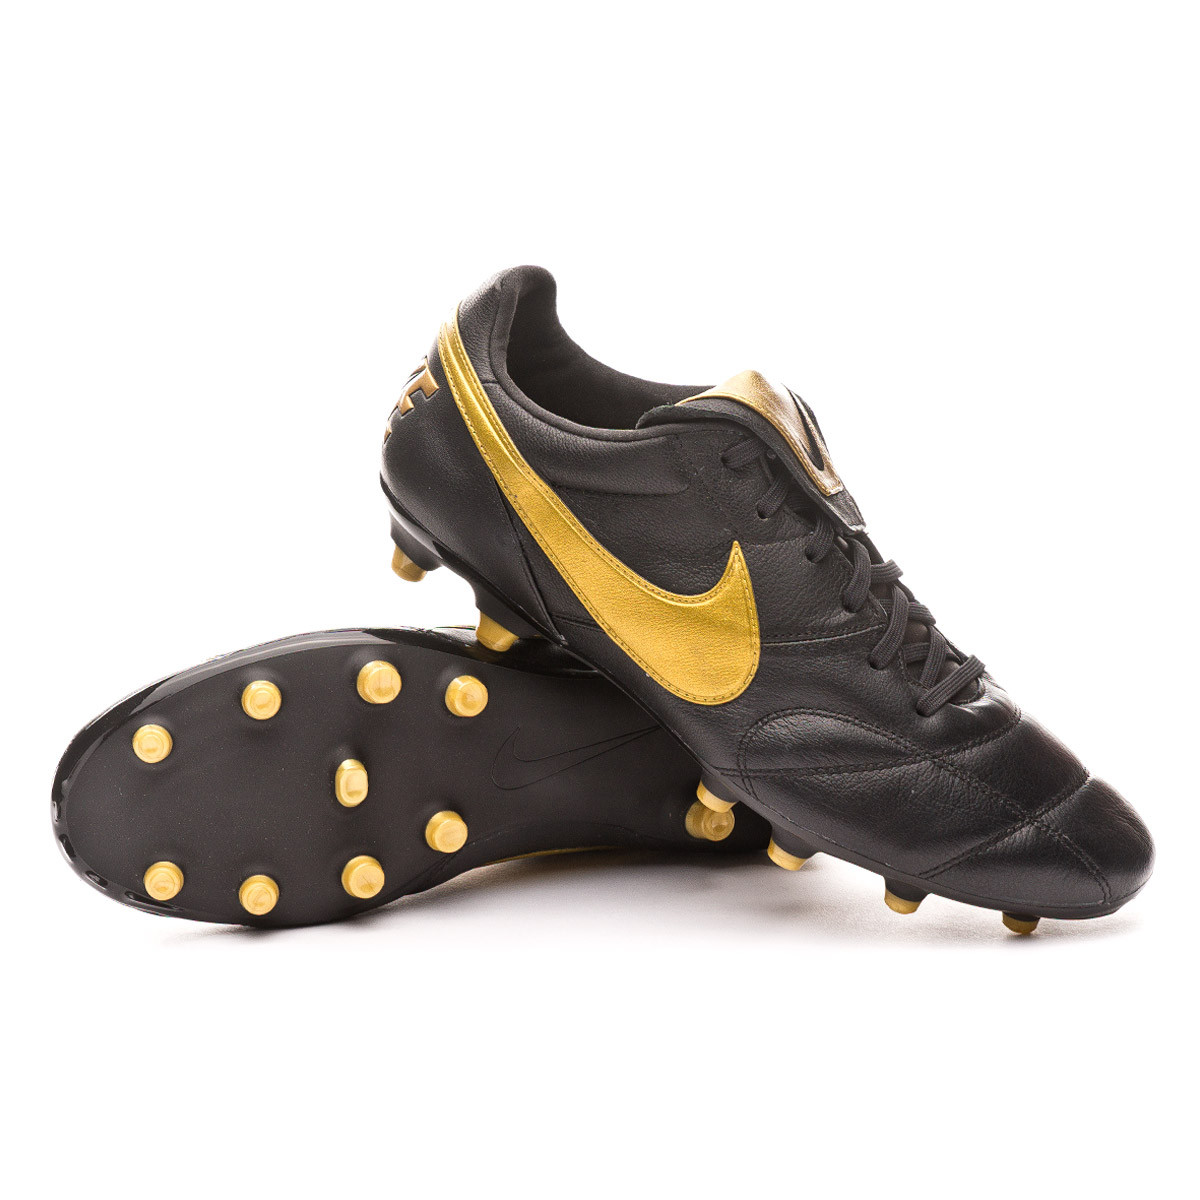 Bota de fútbol Nike Tiempo Premier II FG Black-Metallic vivid gold-Black -  Tienda de fútbol Fútbol Emotion